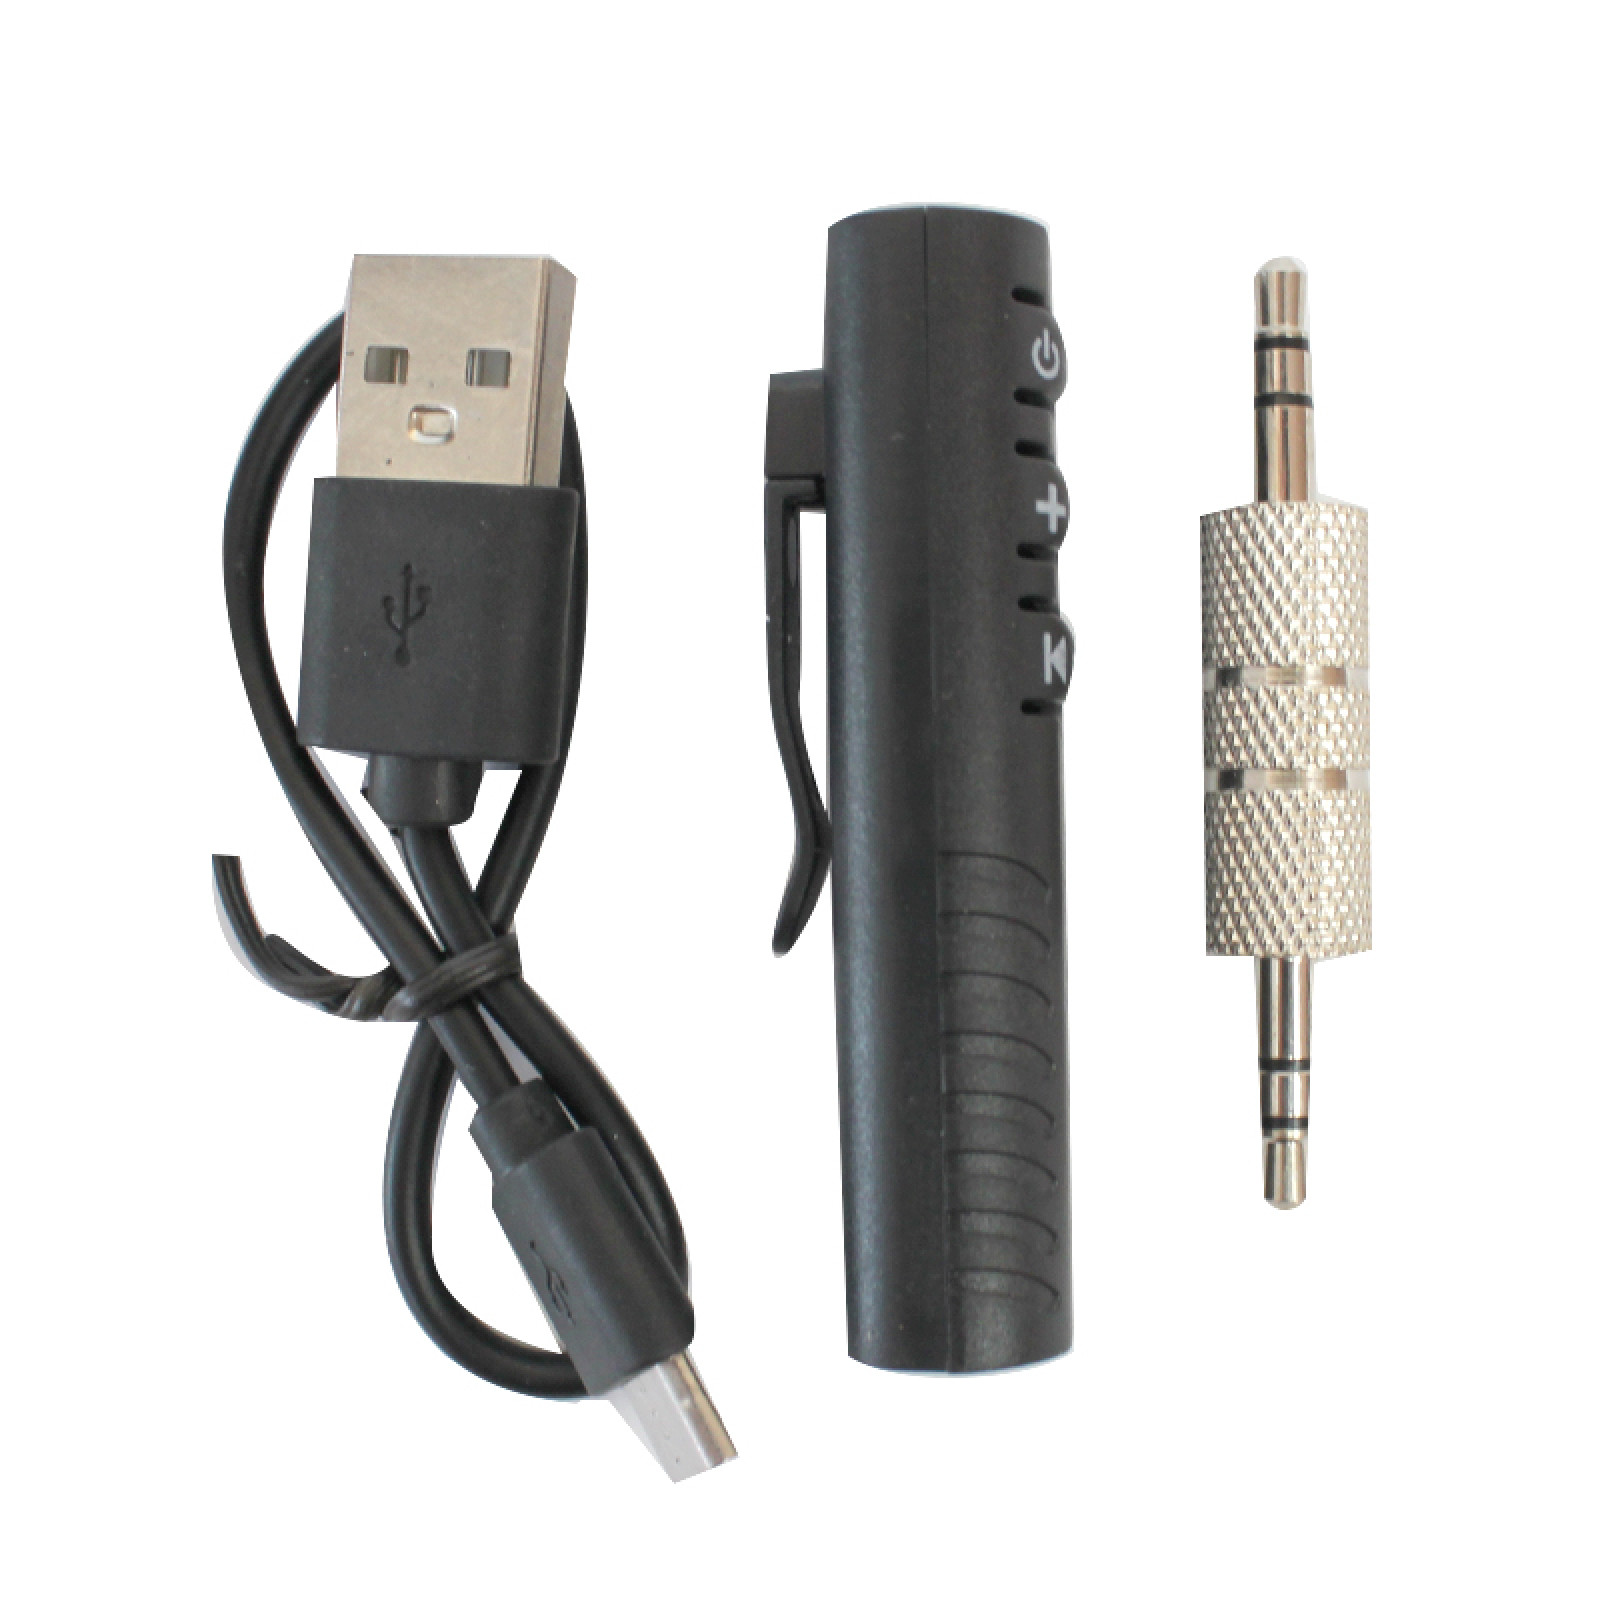 Авто модулятор Bluetooth AUX MP3 WAV адаптер BT-450 Wireless 149800